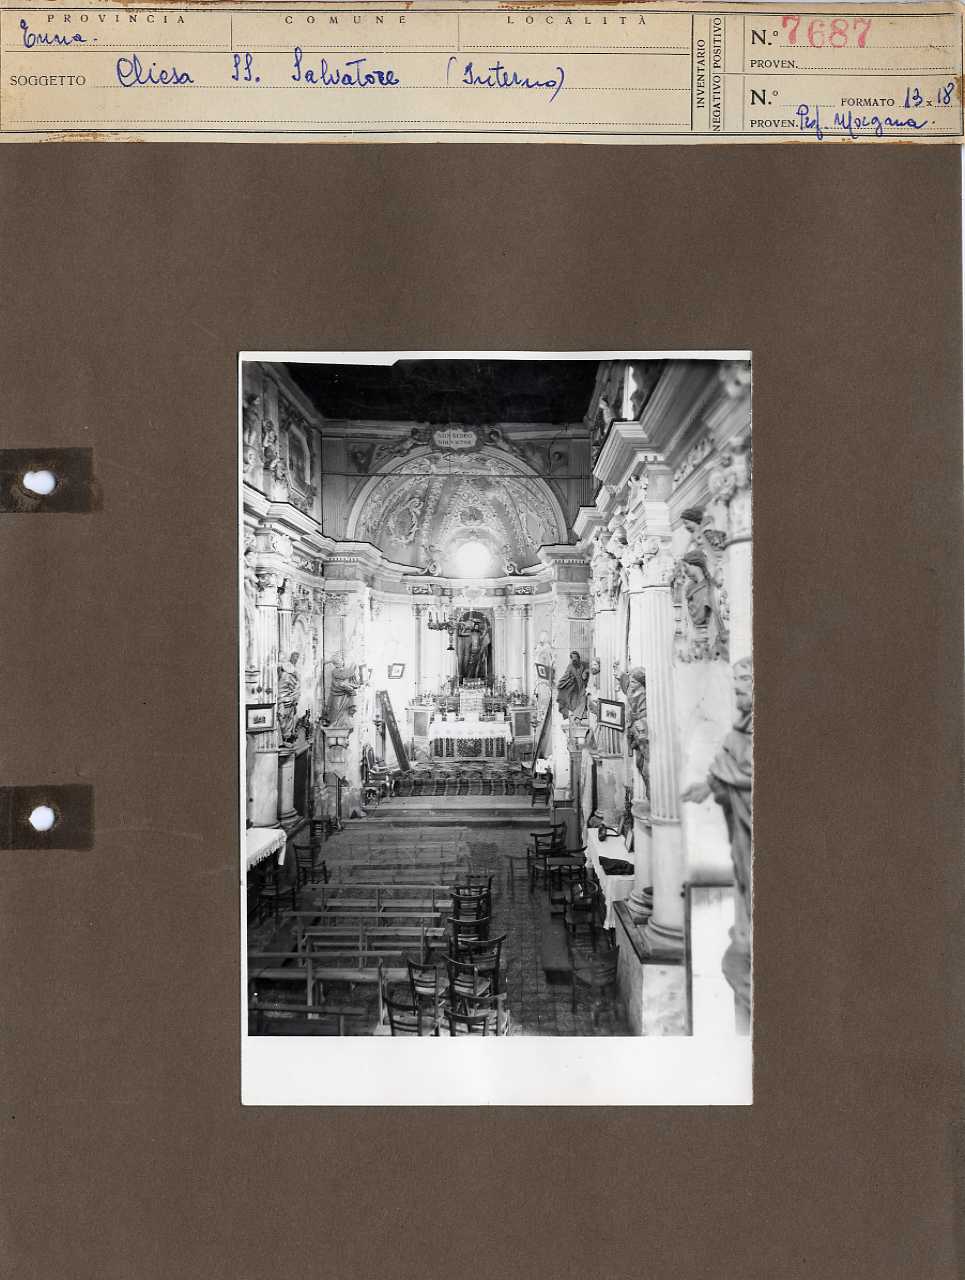 Sicilia - Enna - Architettura religiosa - Chiesa del SS. Salvatore - interno (positivo, elemento-parte componente, scheda di supporto) di Anonimo <1951 - 2000> (seconda metà XX)